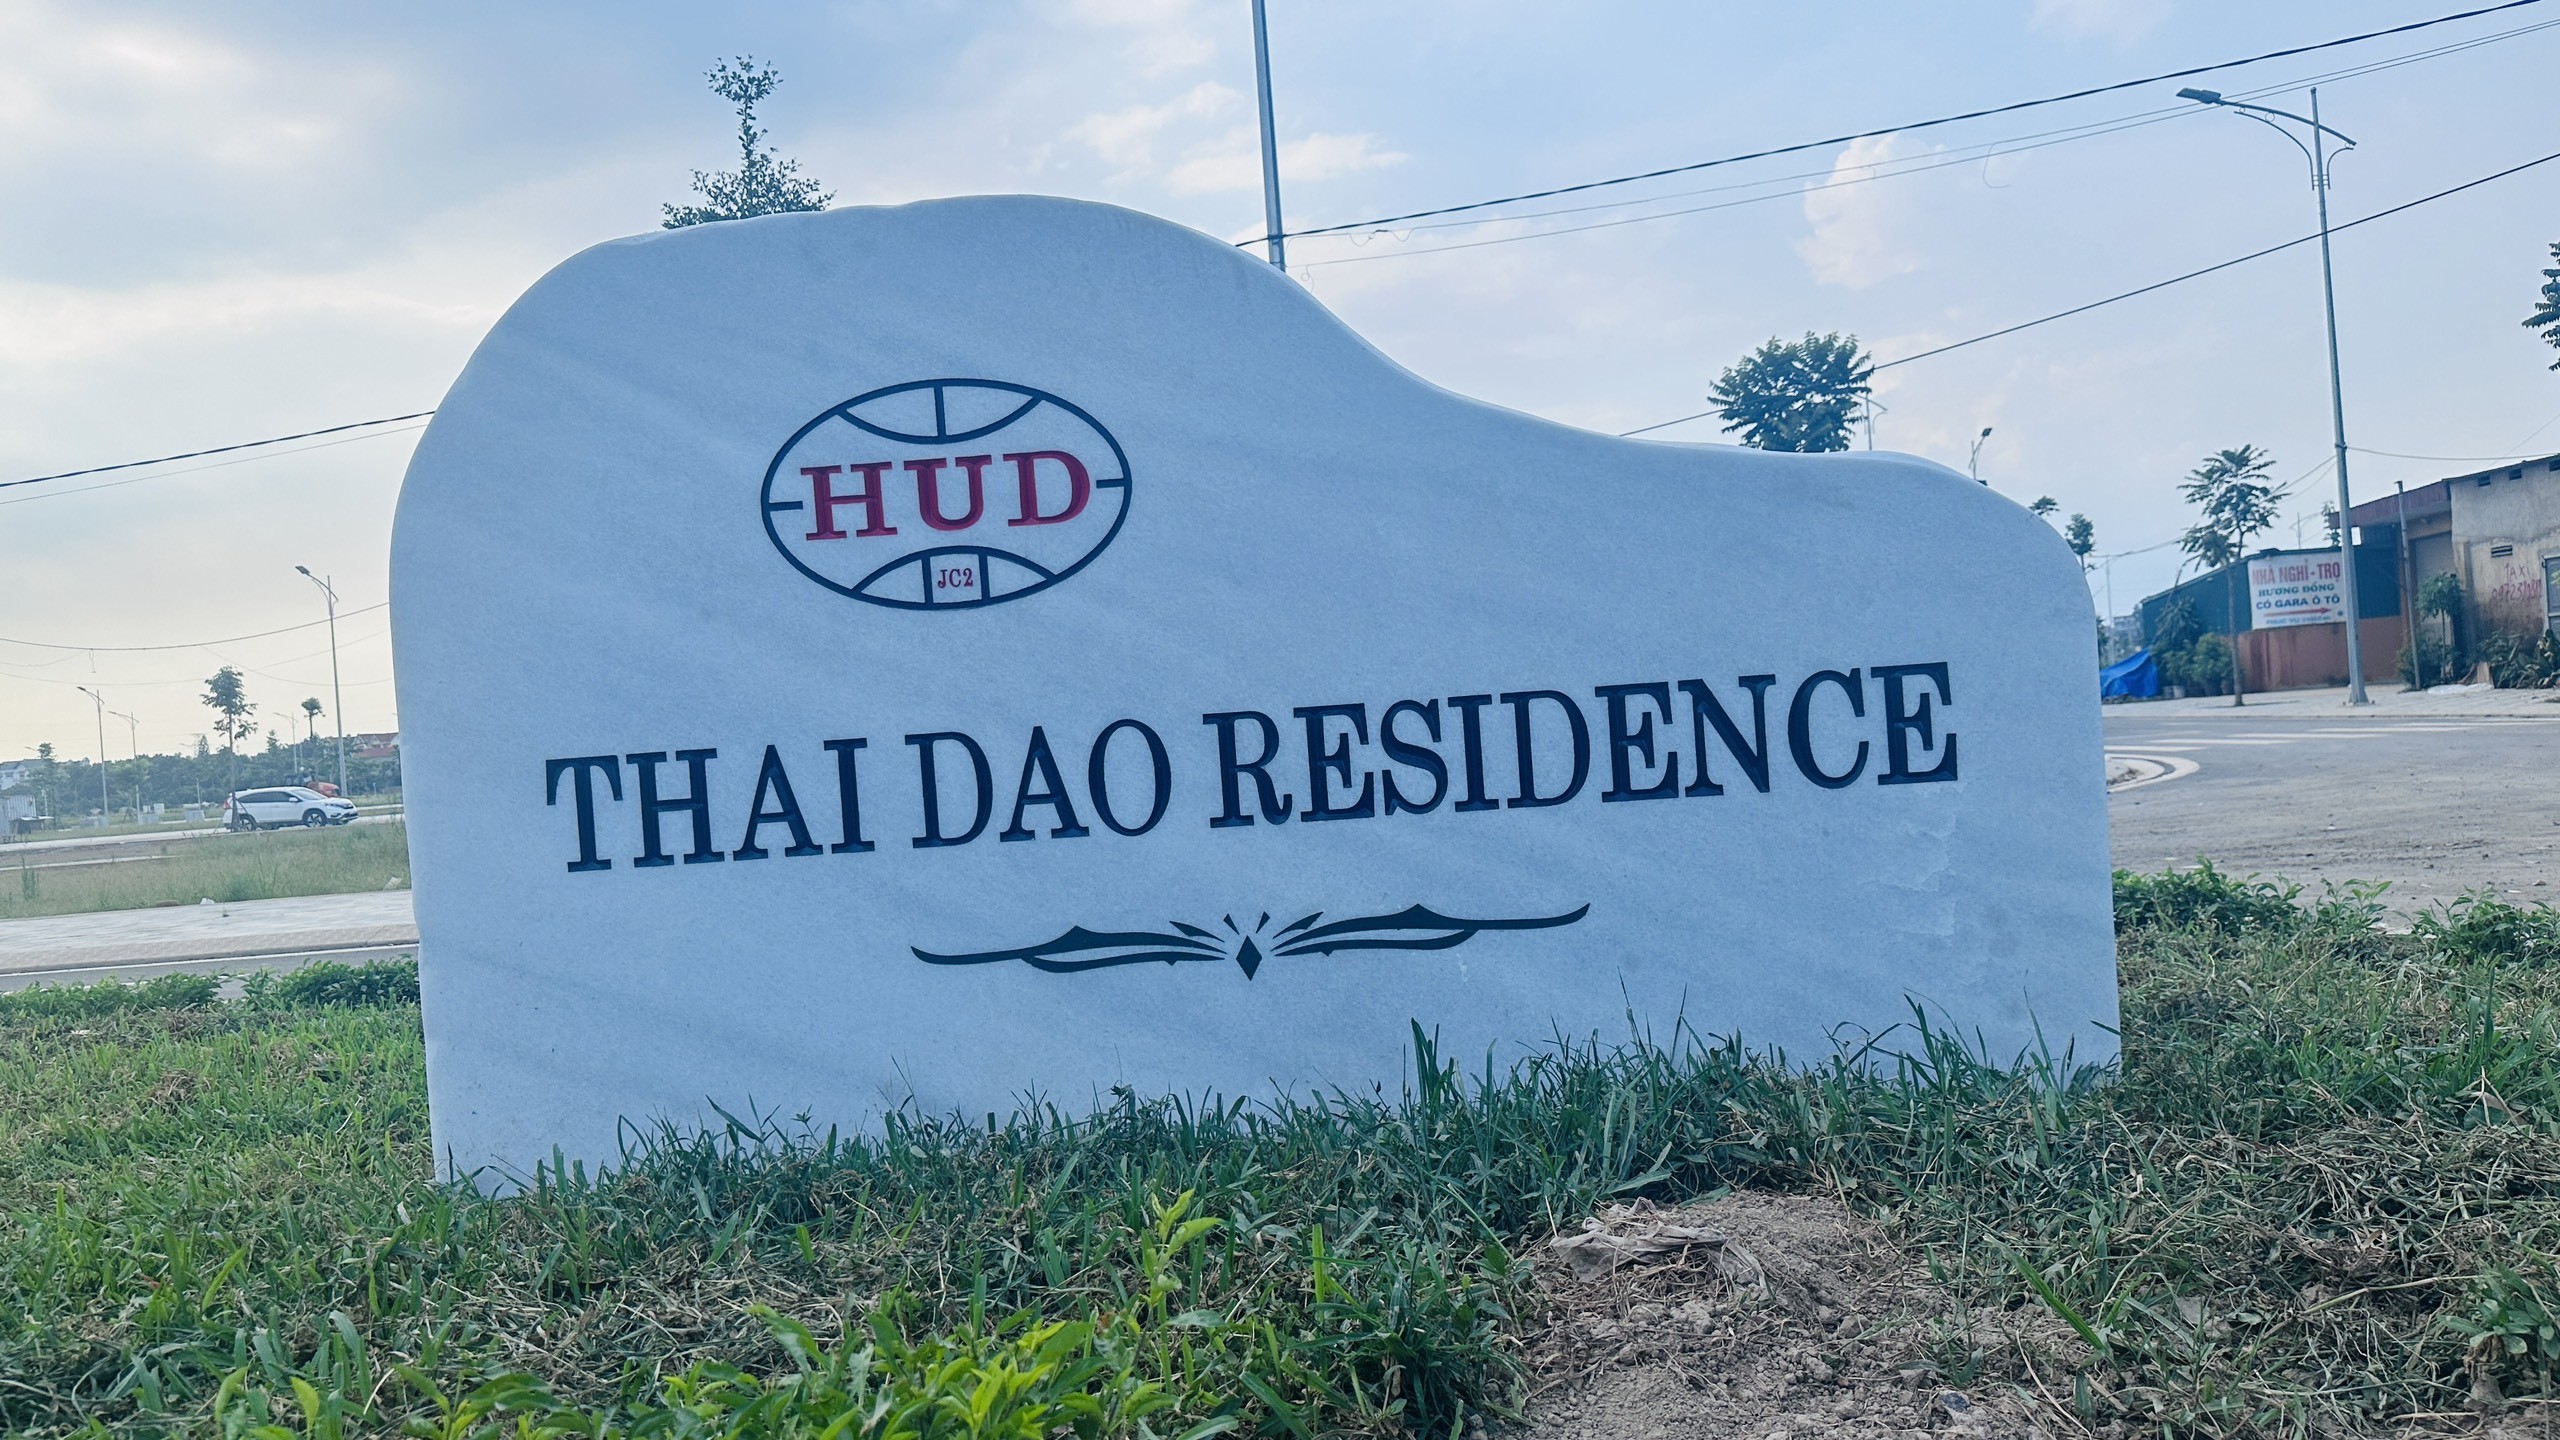 Bán Xuất ngoại giao Đất nền GIÁ RẺ dự án Thái Đào Residence Thôn Mầu – Mặt đường Ql 31 9